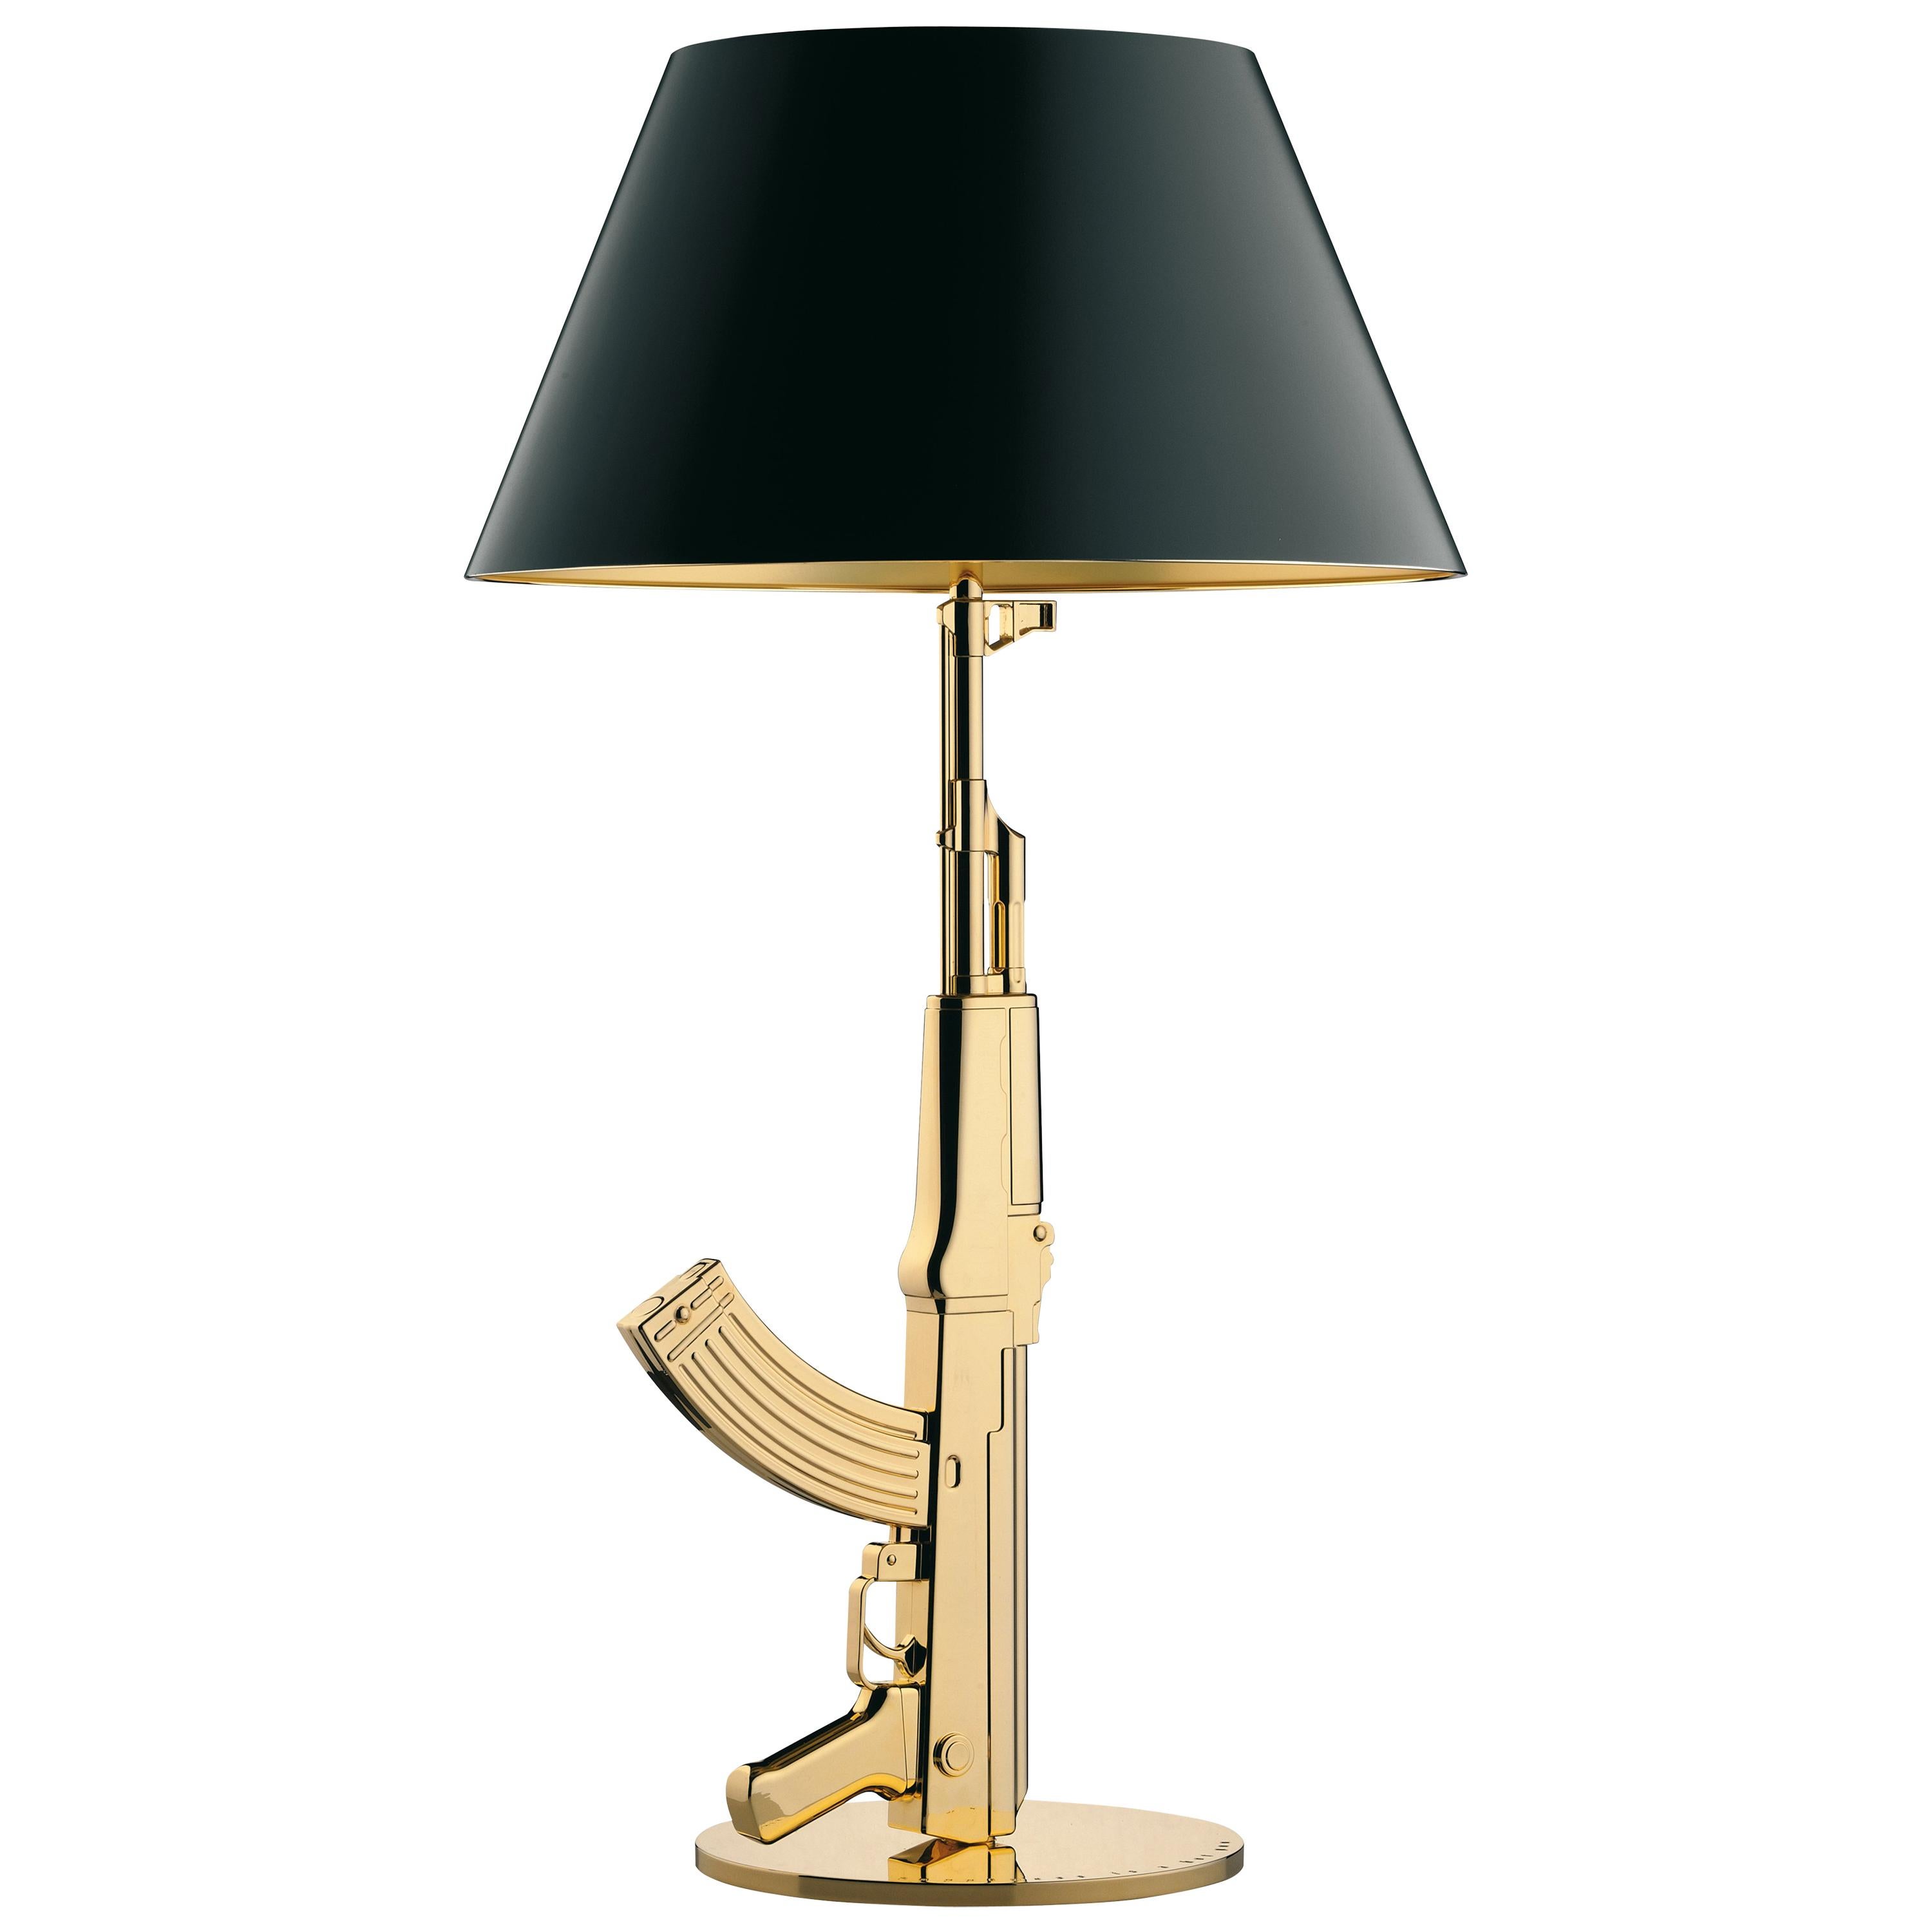 Flos Gun Lamp - 6 For Sale on 1stDibs | flos gun lamp replica, gun lamps  for sale, gunlamp